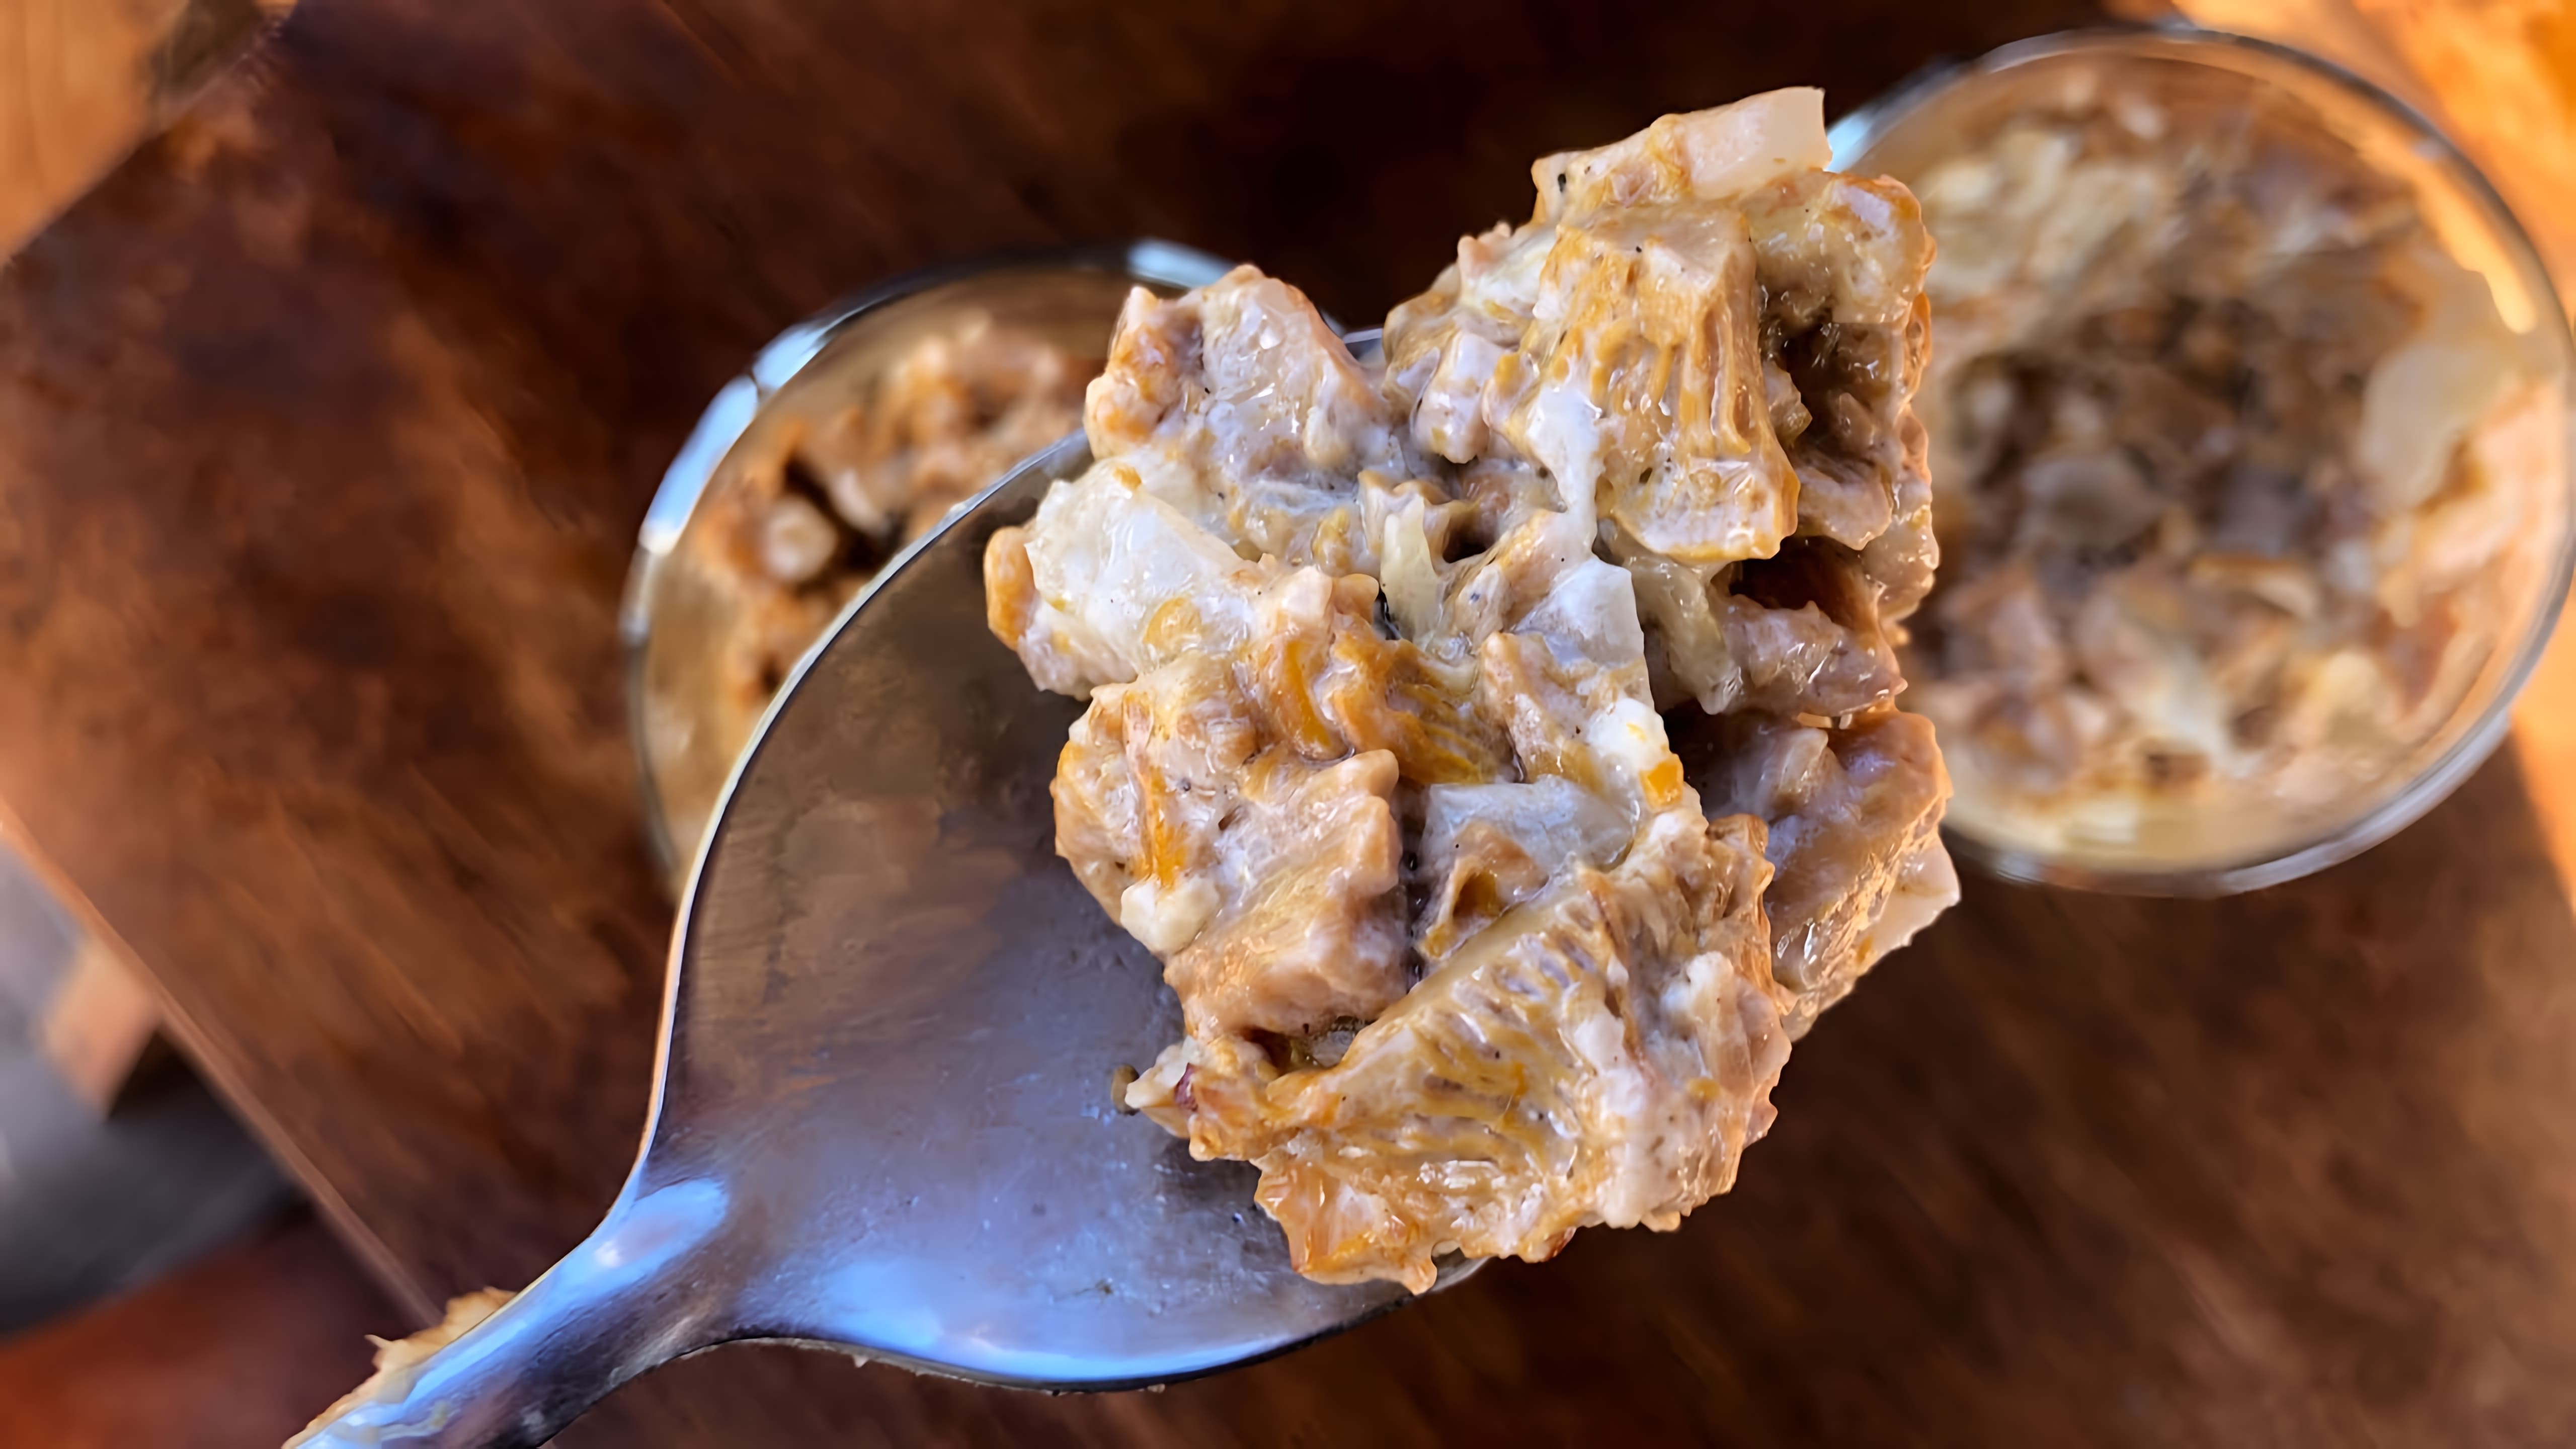 В этом видео демонстрируется рецепт приготовления грибного соуса из лисичек со сметаной